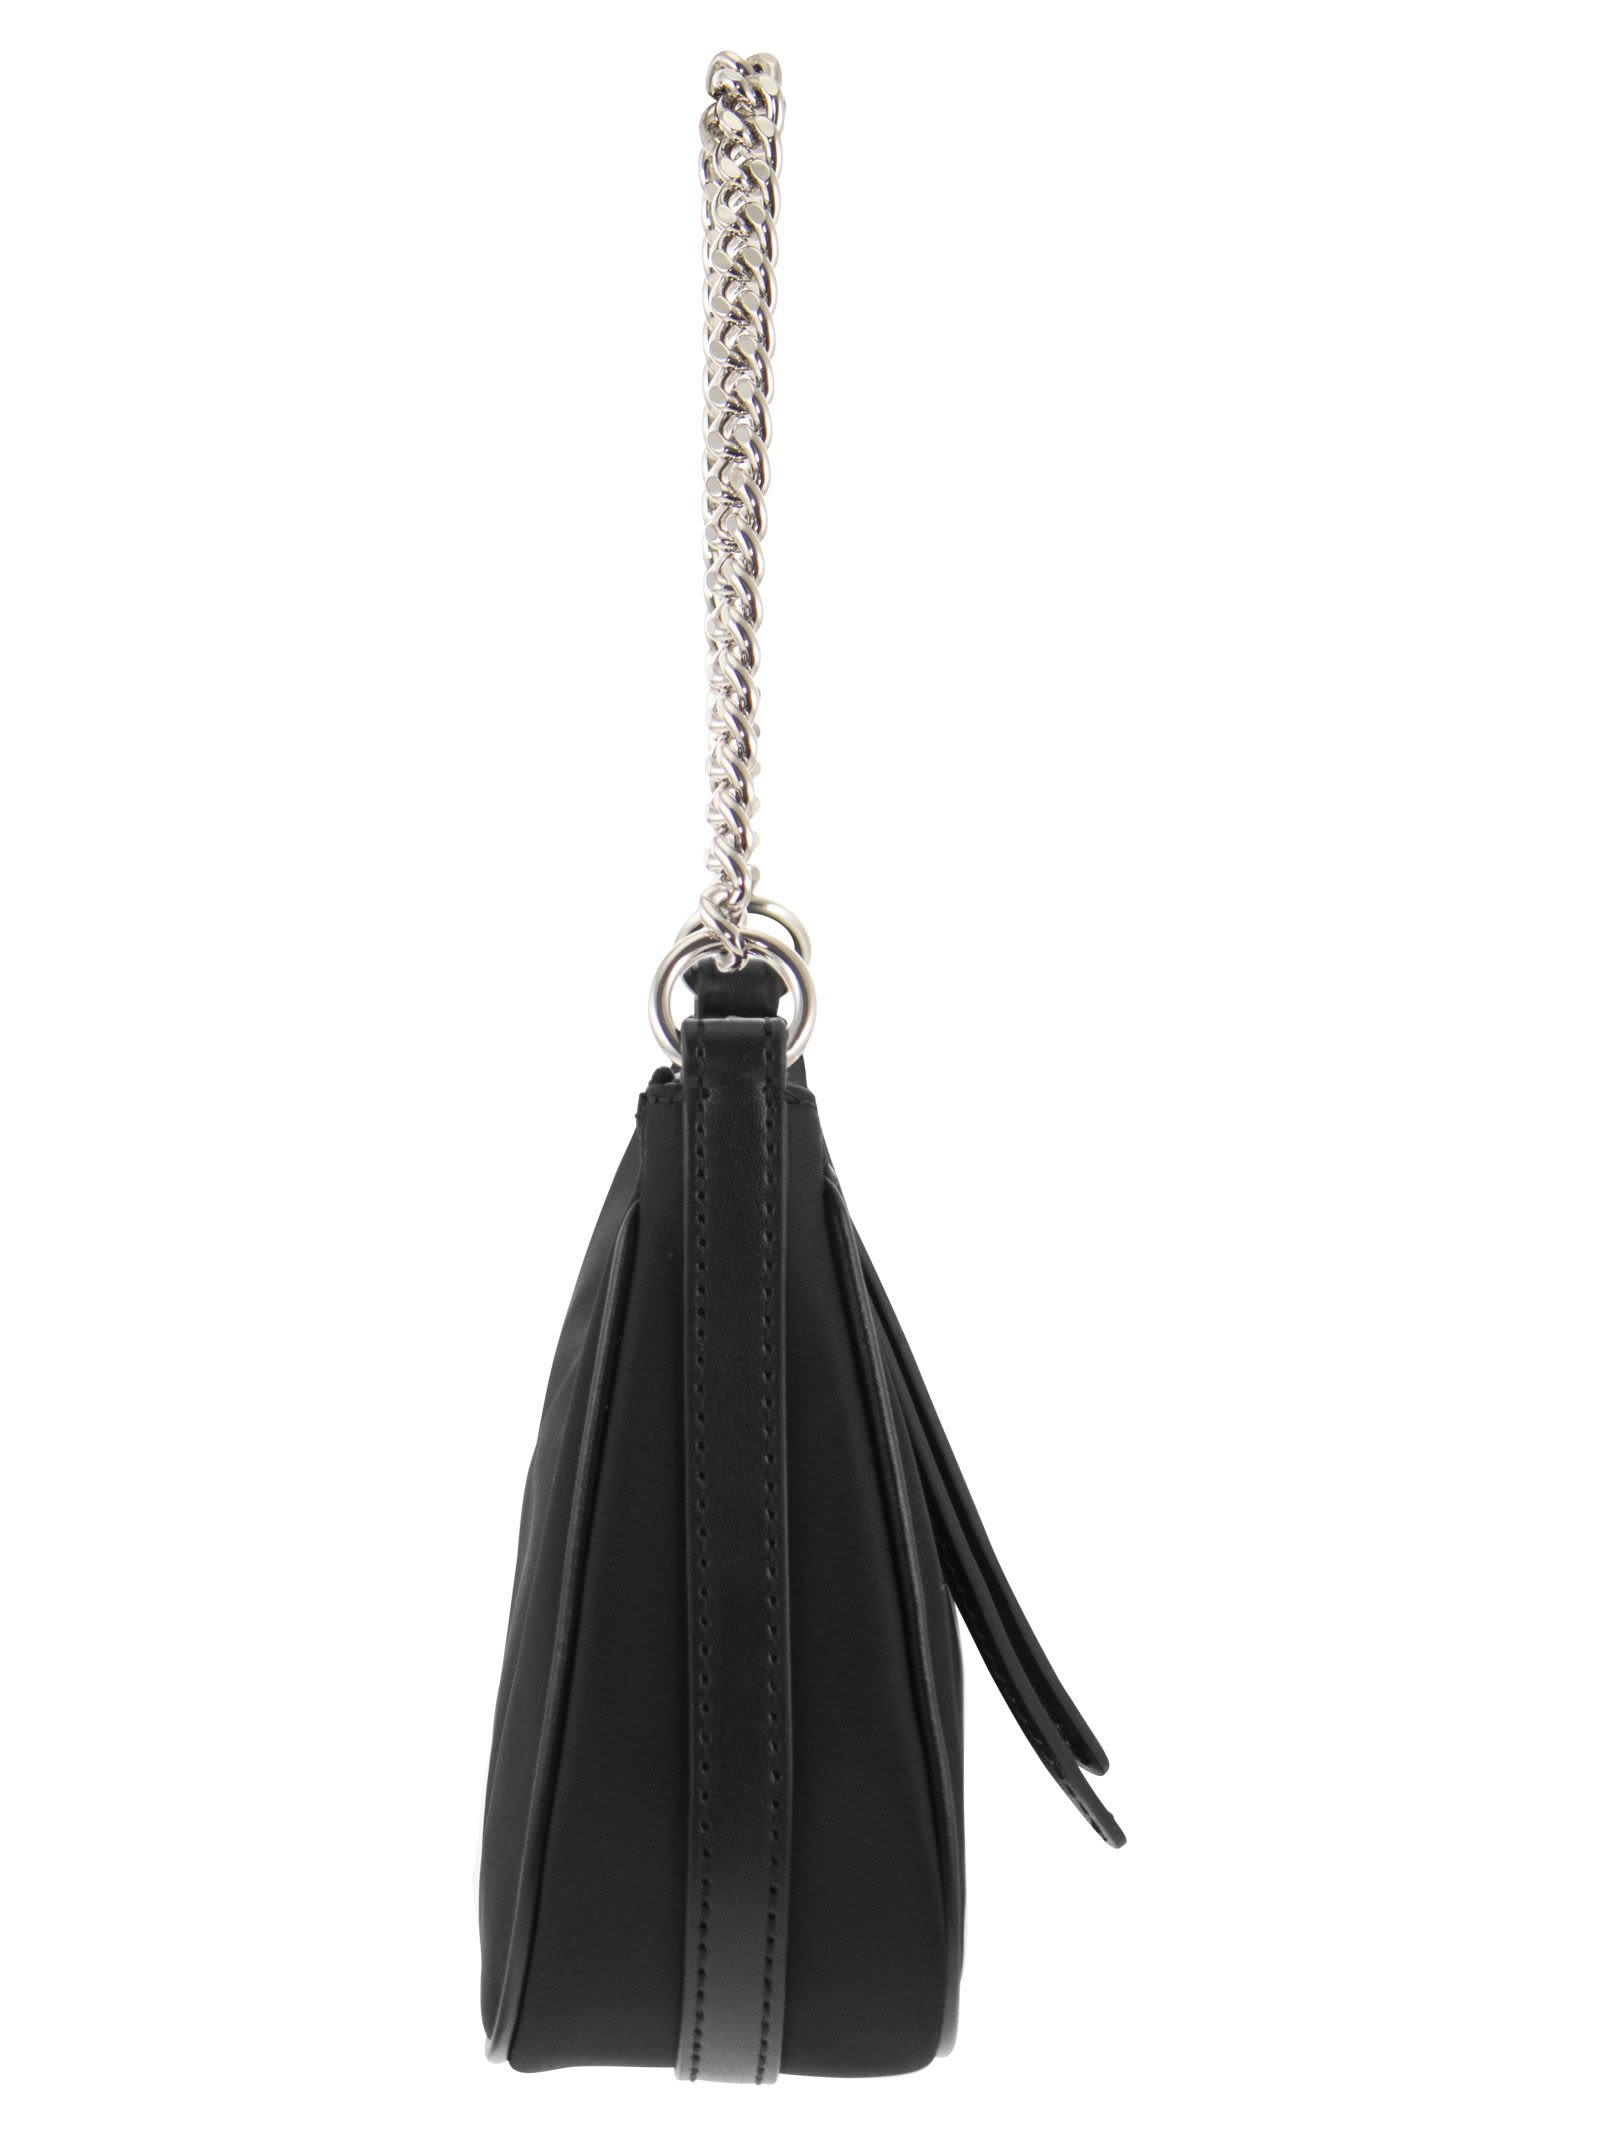 Michael Kors women's bag in gabardine nylon Black